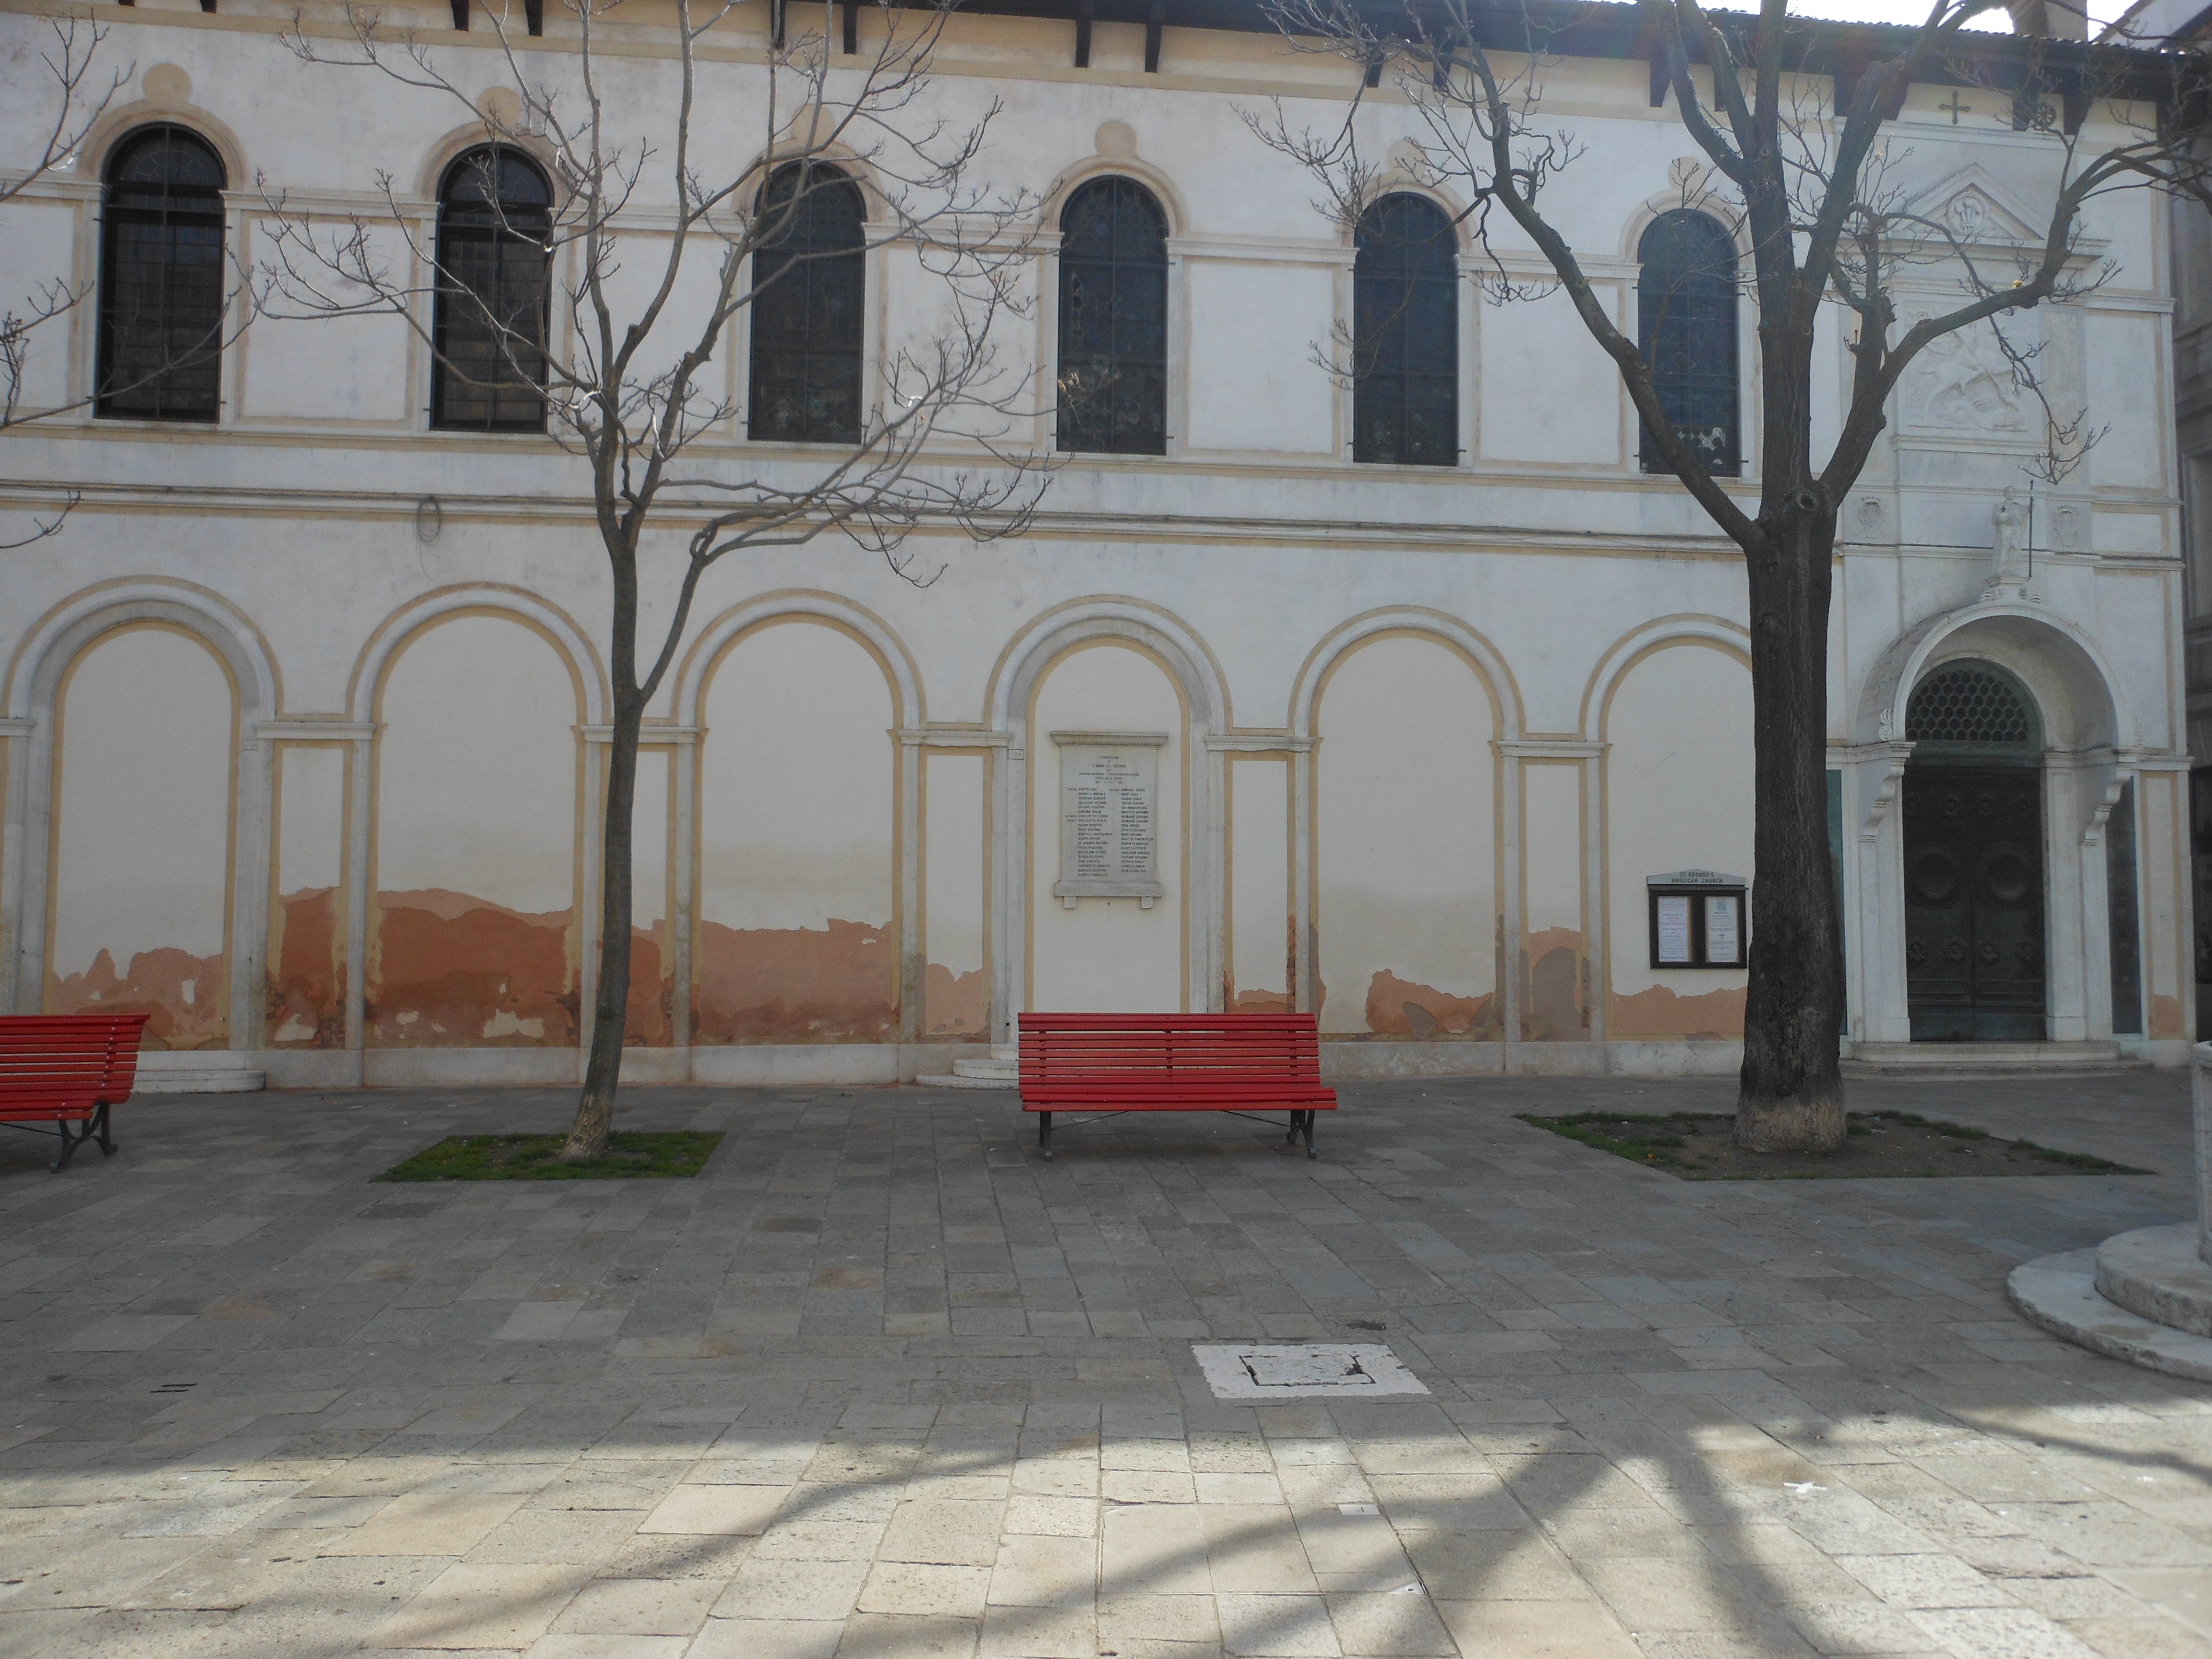 Motivi decorativi a foglia d'acanto (lapide commemorativa ai caduti) - ambito veneziano (primo quarto sec. XX)